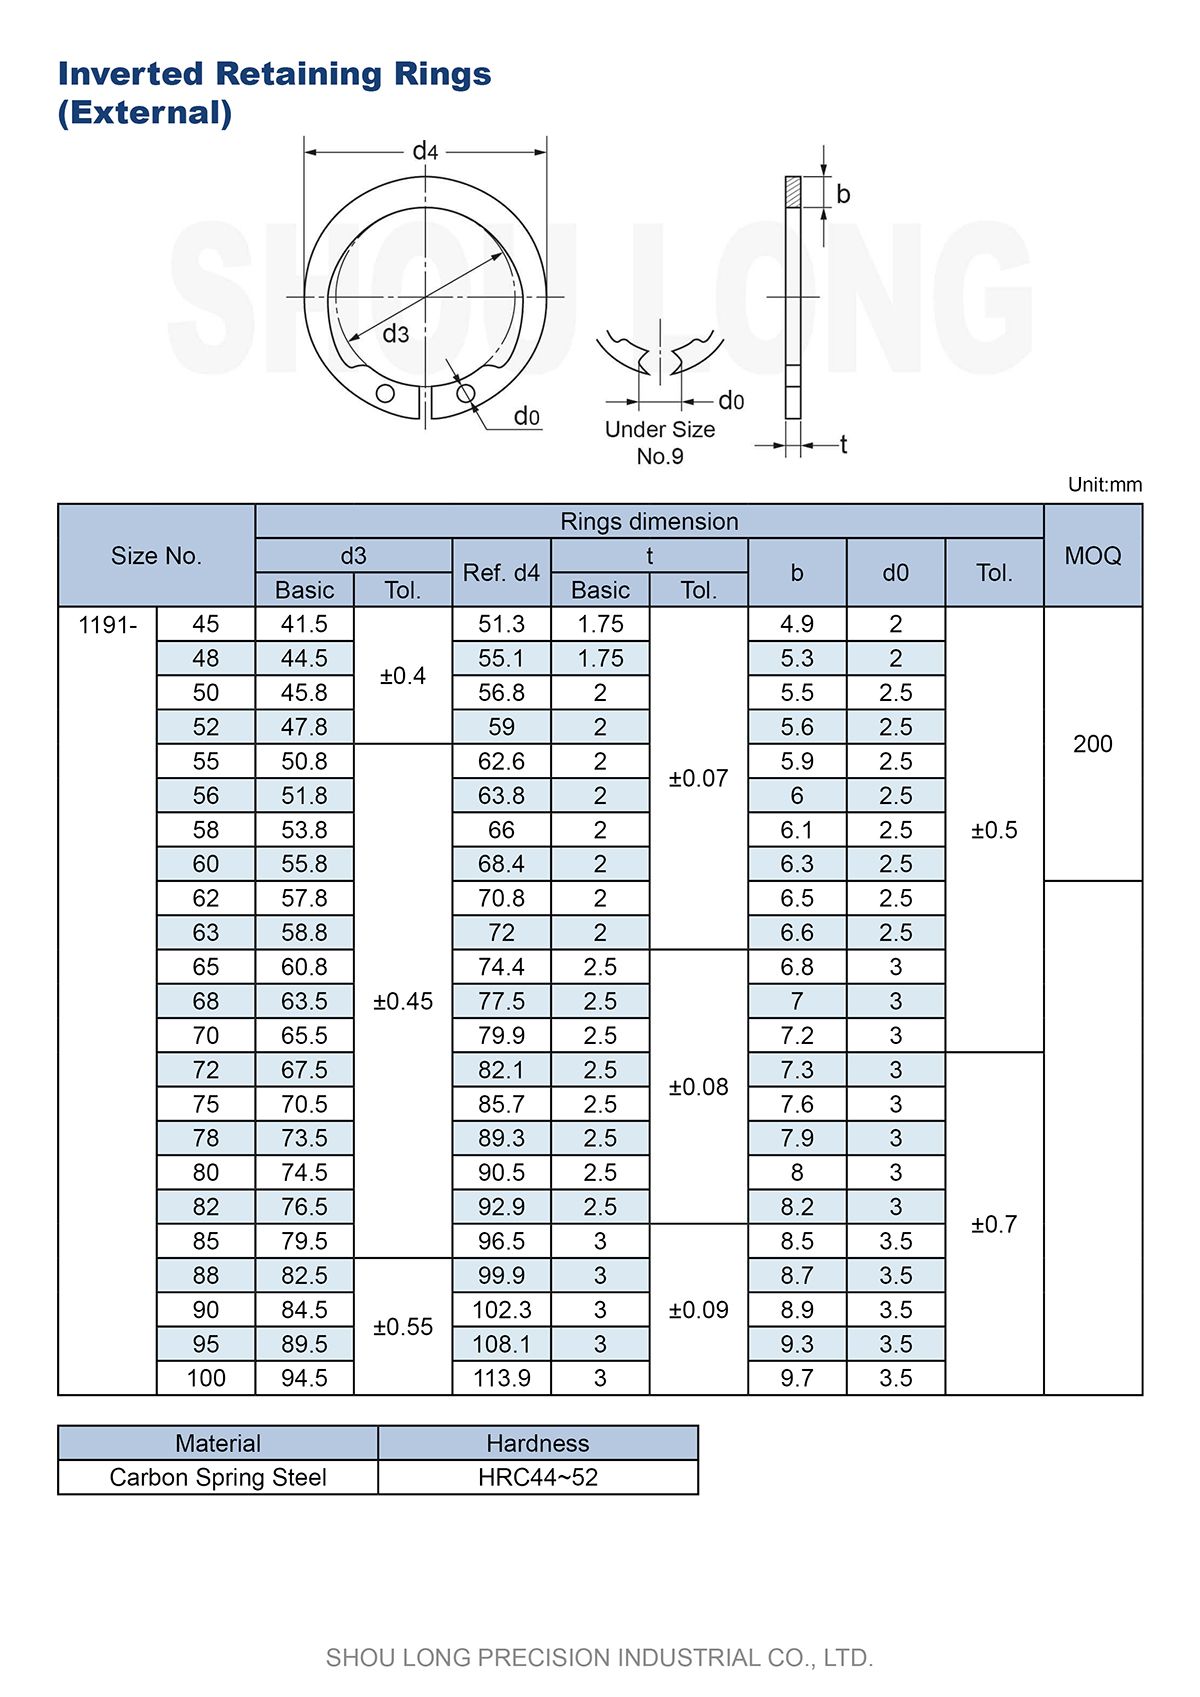 Specifikace invertovaných upevňovacích kroužků pro hřídel dle JIS metrických standardů-2